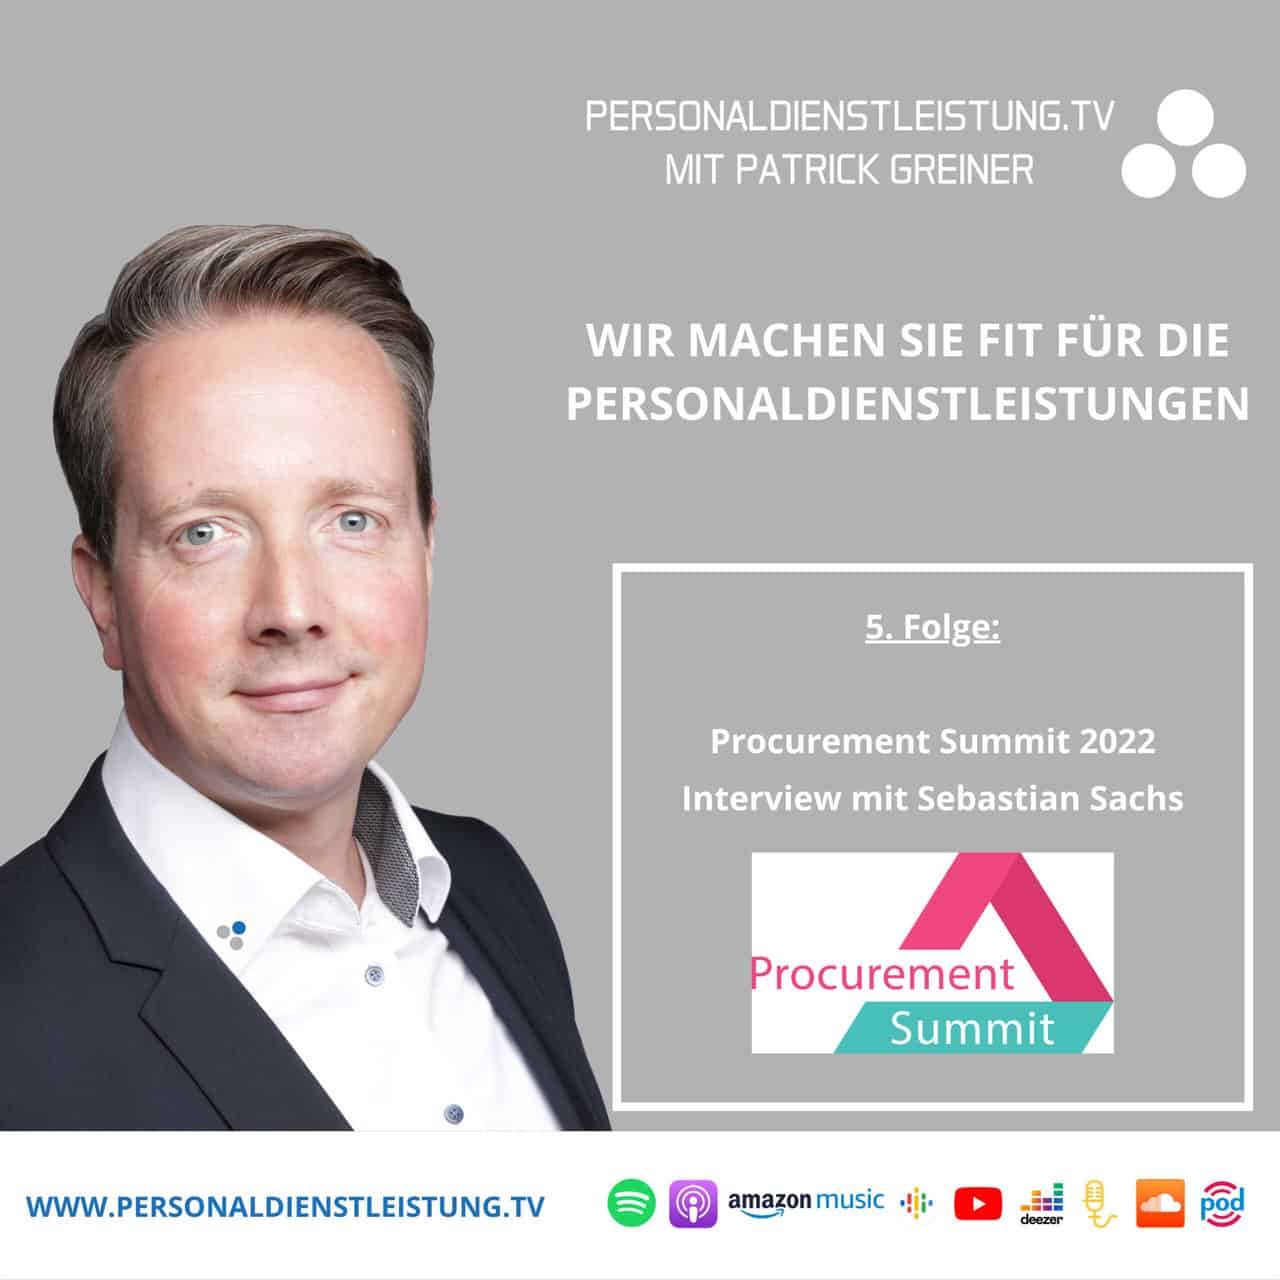 Procurement Summit 2022 | PERSONALDIENSTLEISTUNG.TV mit Patrick Greiner